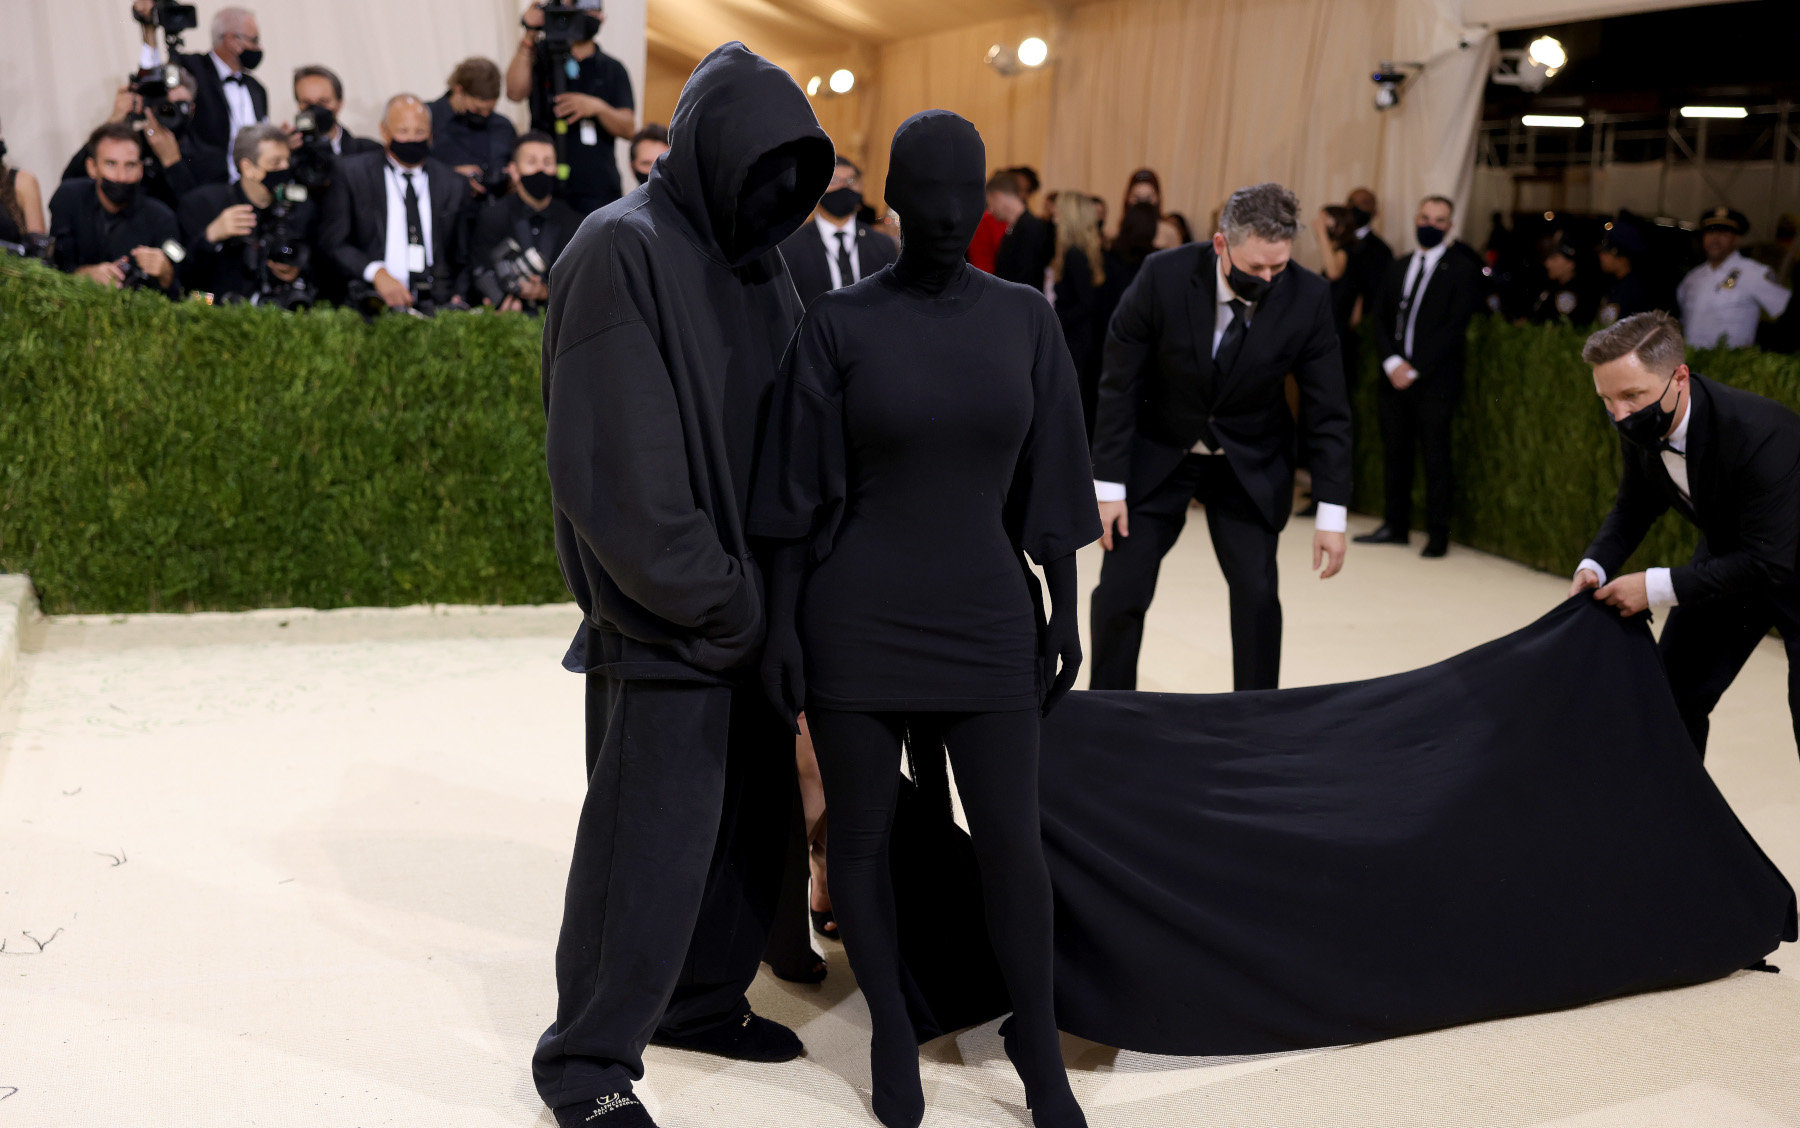 Met Gala: Η Kim Kardashian ντύθηκε «Kanye West» και συνοδευόταν από άντρα που μπορεί να ήταν ο ίδιος ο Kanye